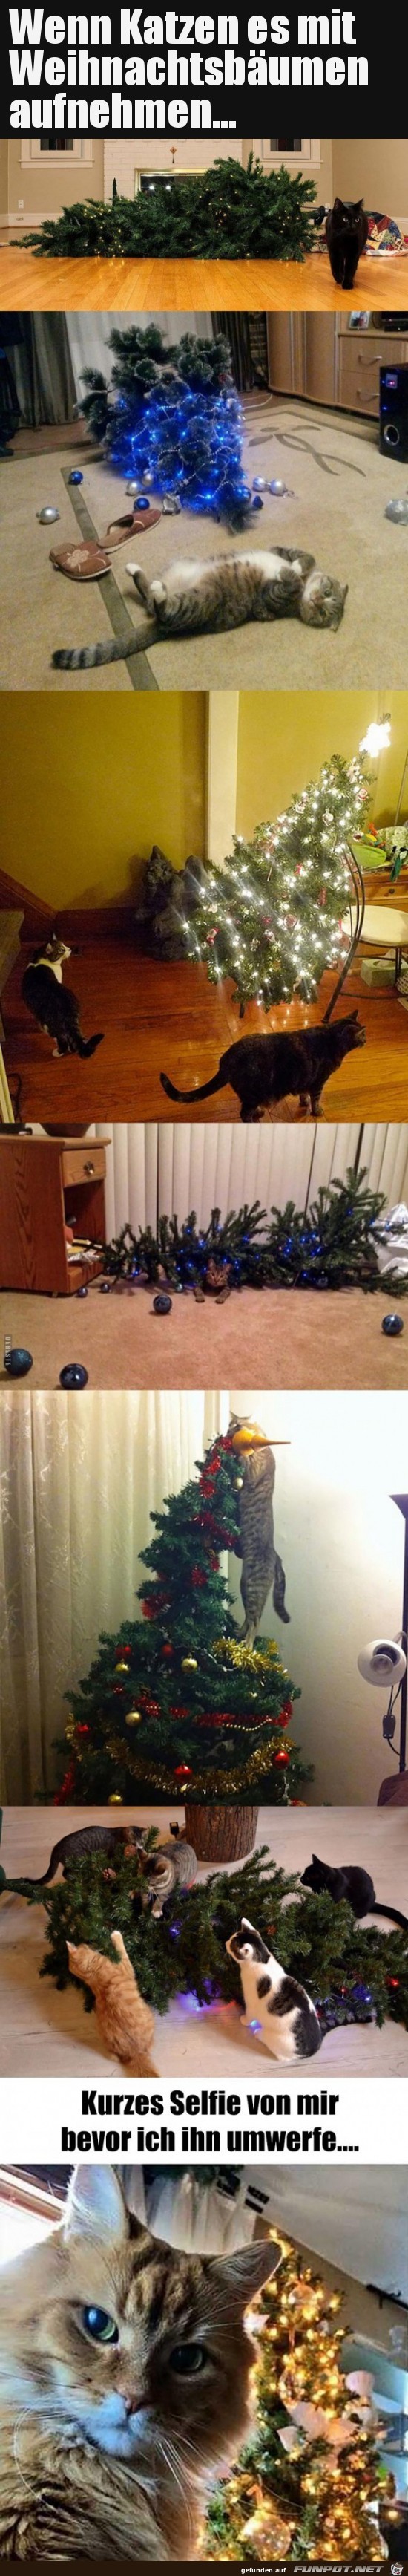 Katzen und der Weihnachtsbaum